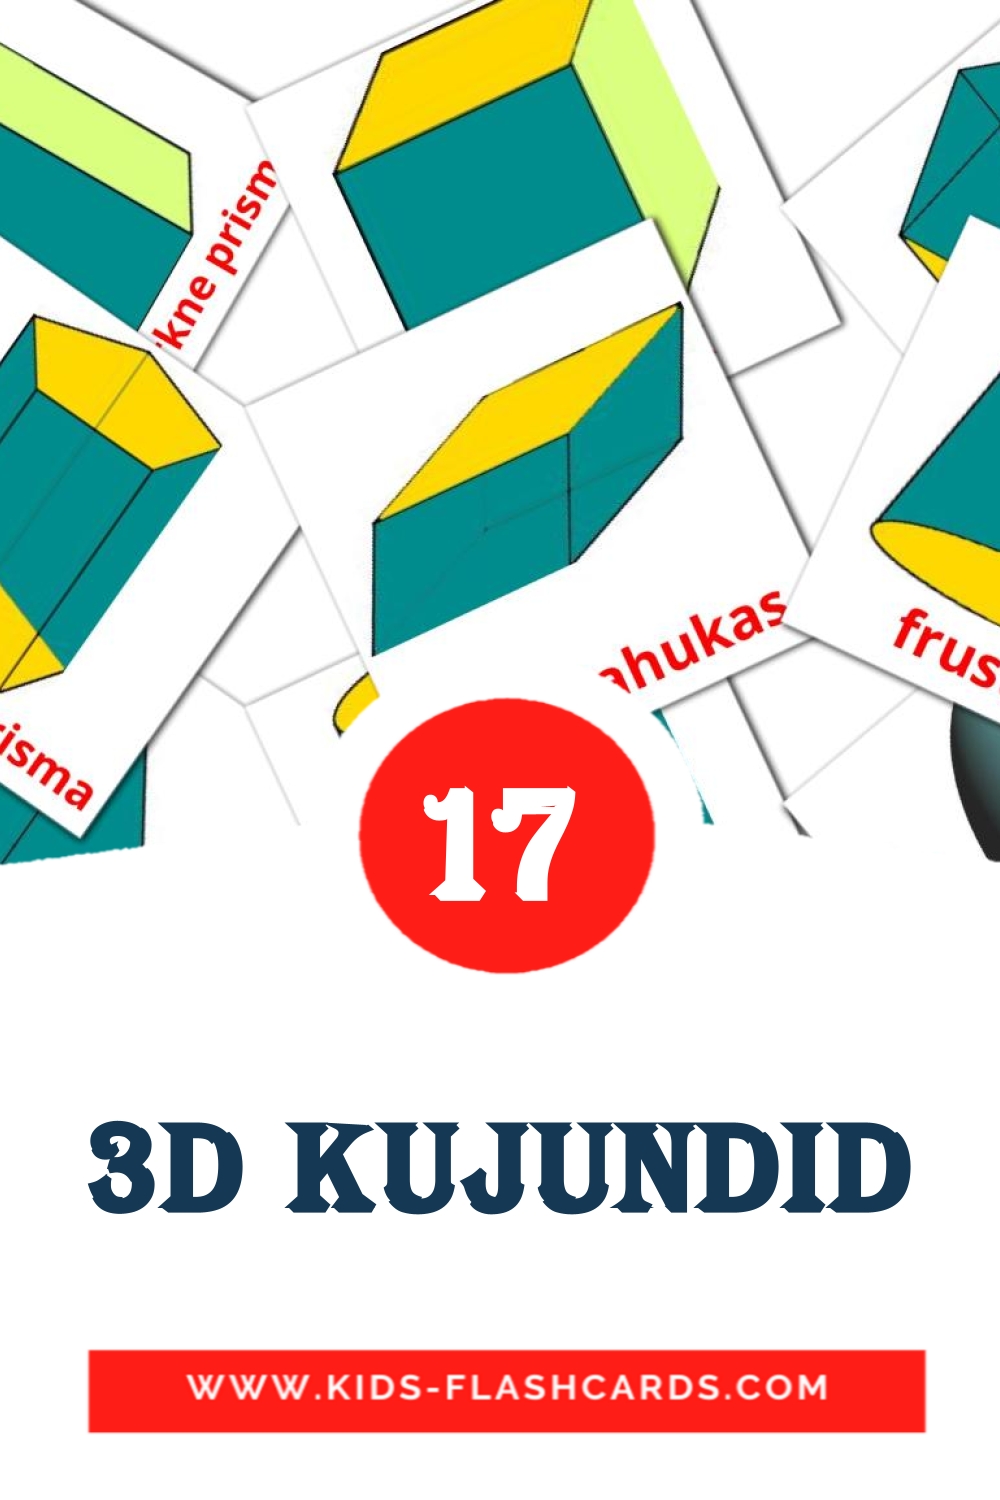 17 3D kujundid Bildkarten für den Kindergarten auf Estnisch